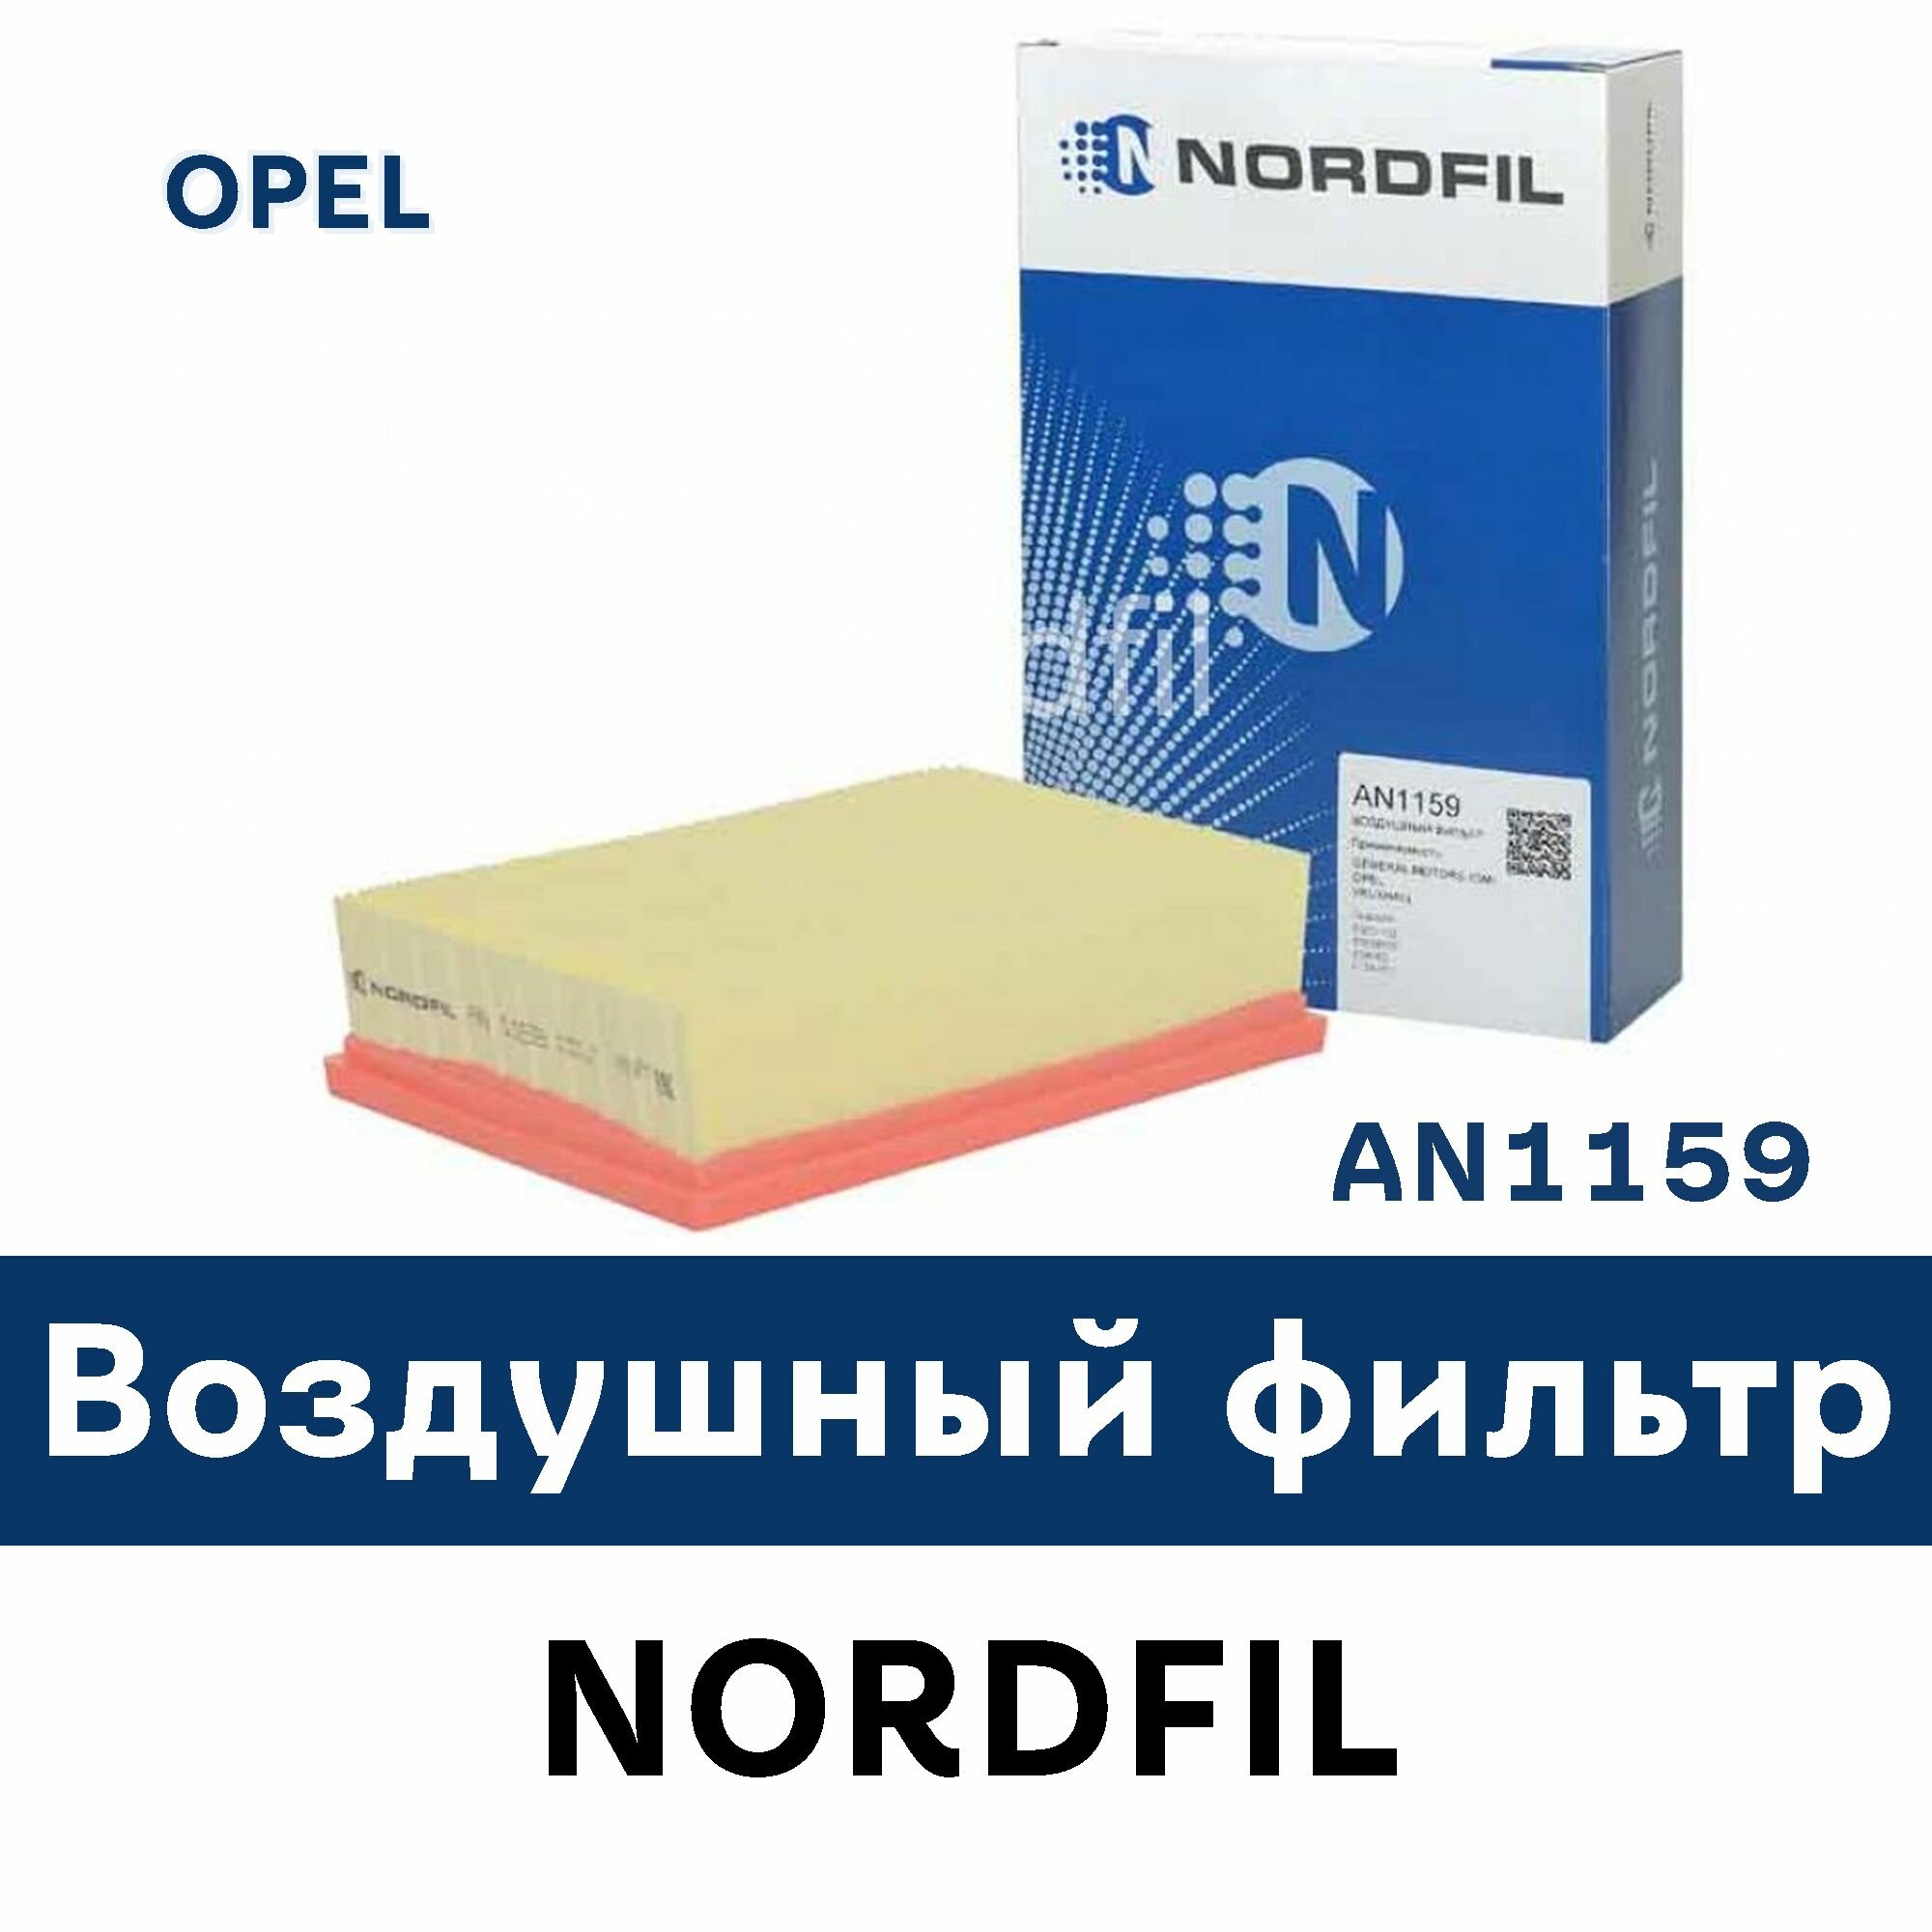 Воздушный фильтр для OPEL MOKKA AN1159 NORDFIL